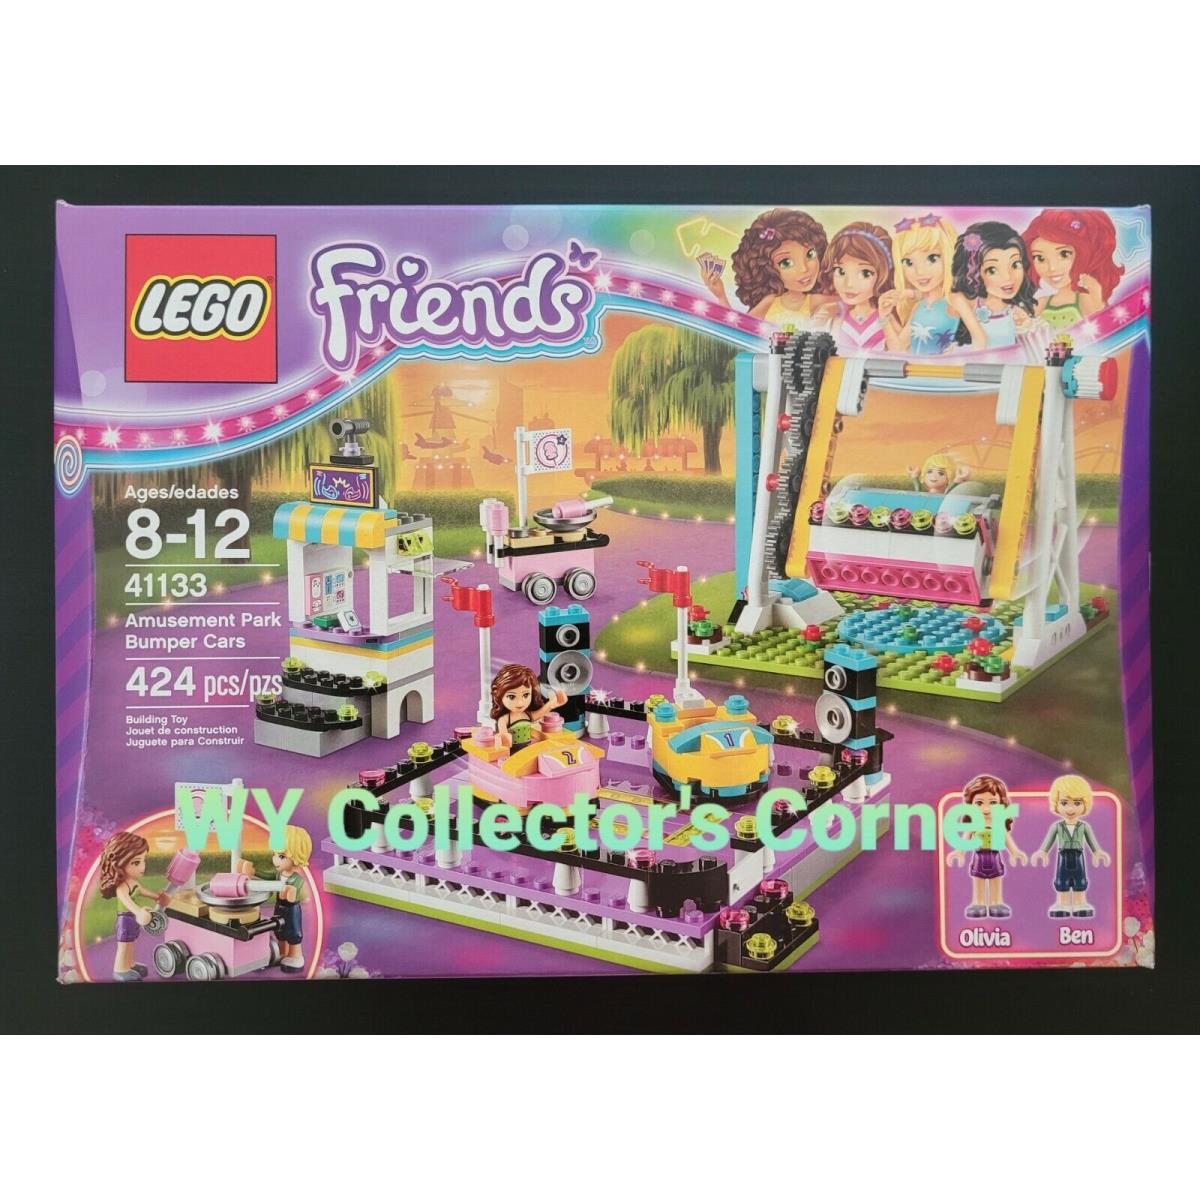 Retired Lego Friends Set 41133 Amusement Park Bumper Cars